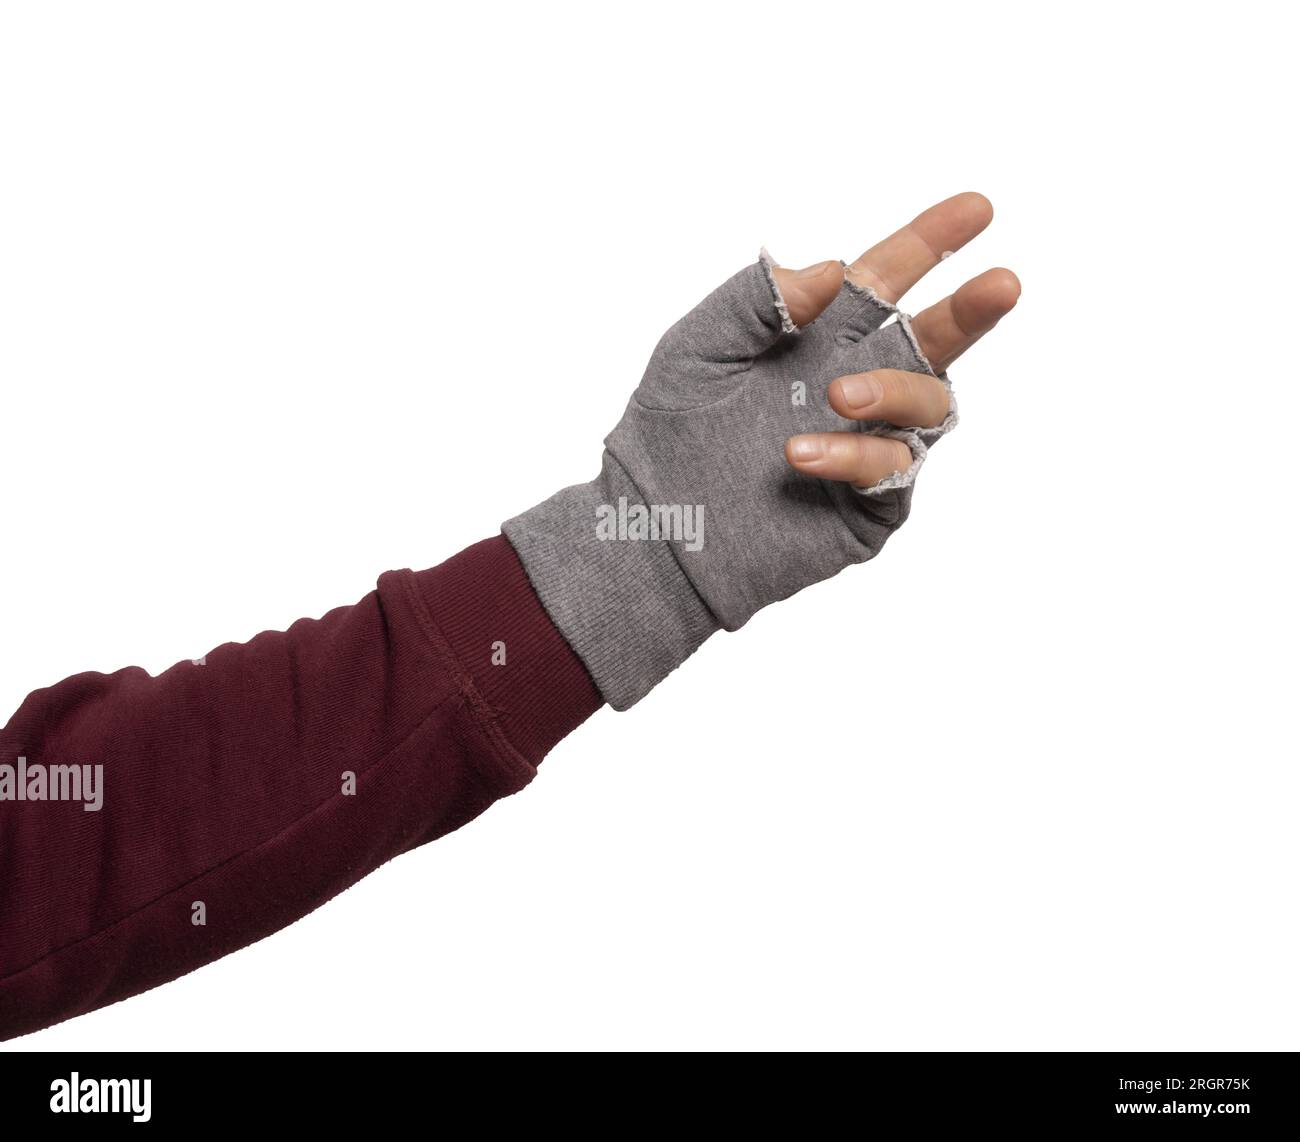 Eine Hand mit dem grauen fingerlosen Handschuh oder auf einem transparenten Hintergrund Stockfoto